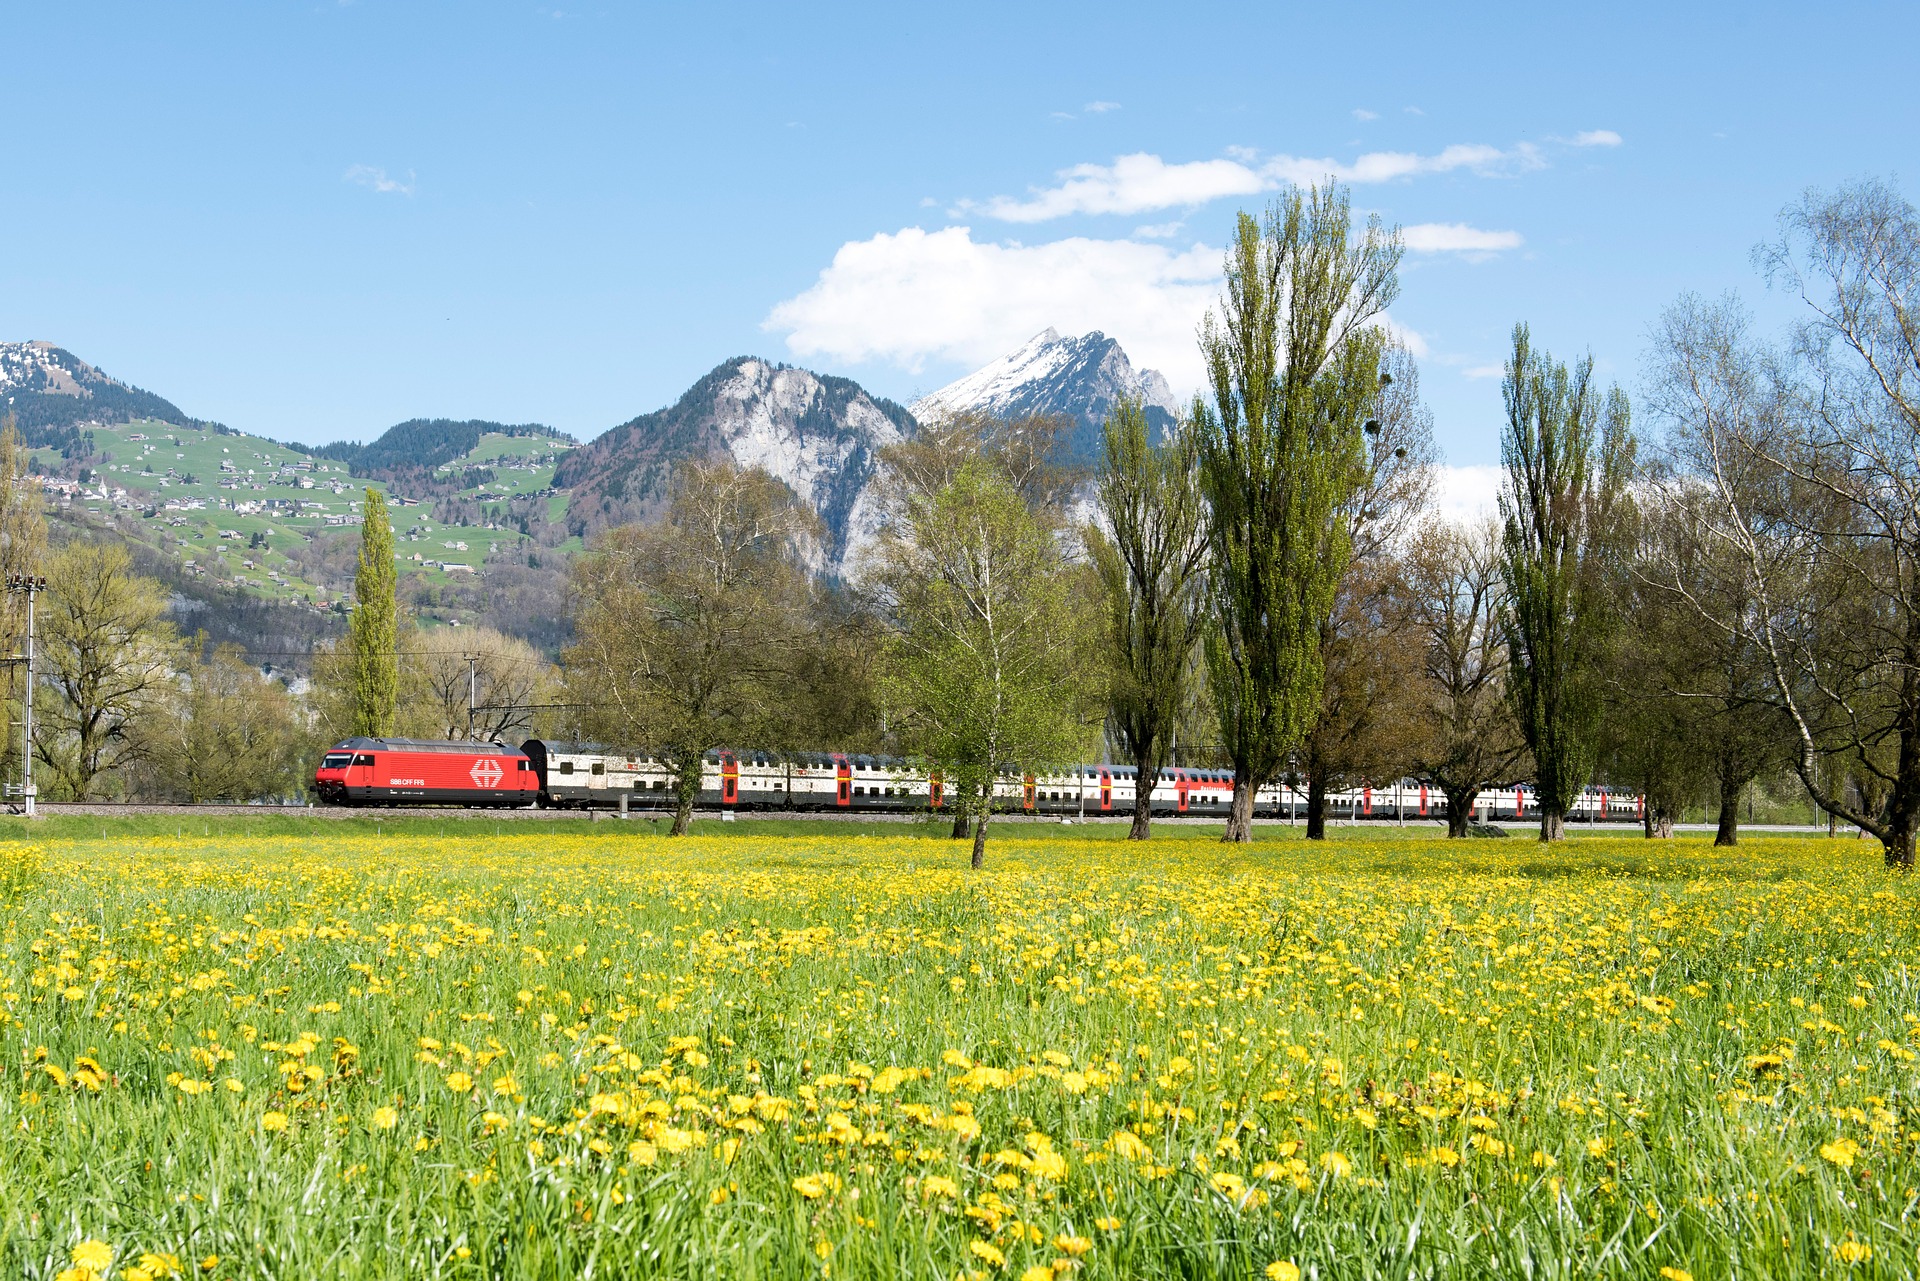 Urlaub mit dem Zug: Mit der Deutschen Bahn in die Ferien reisen